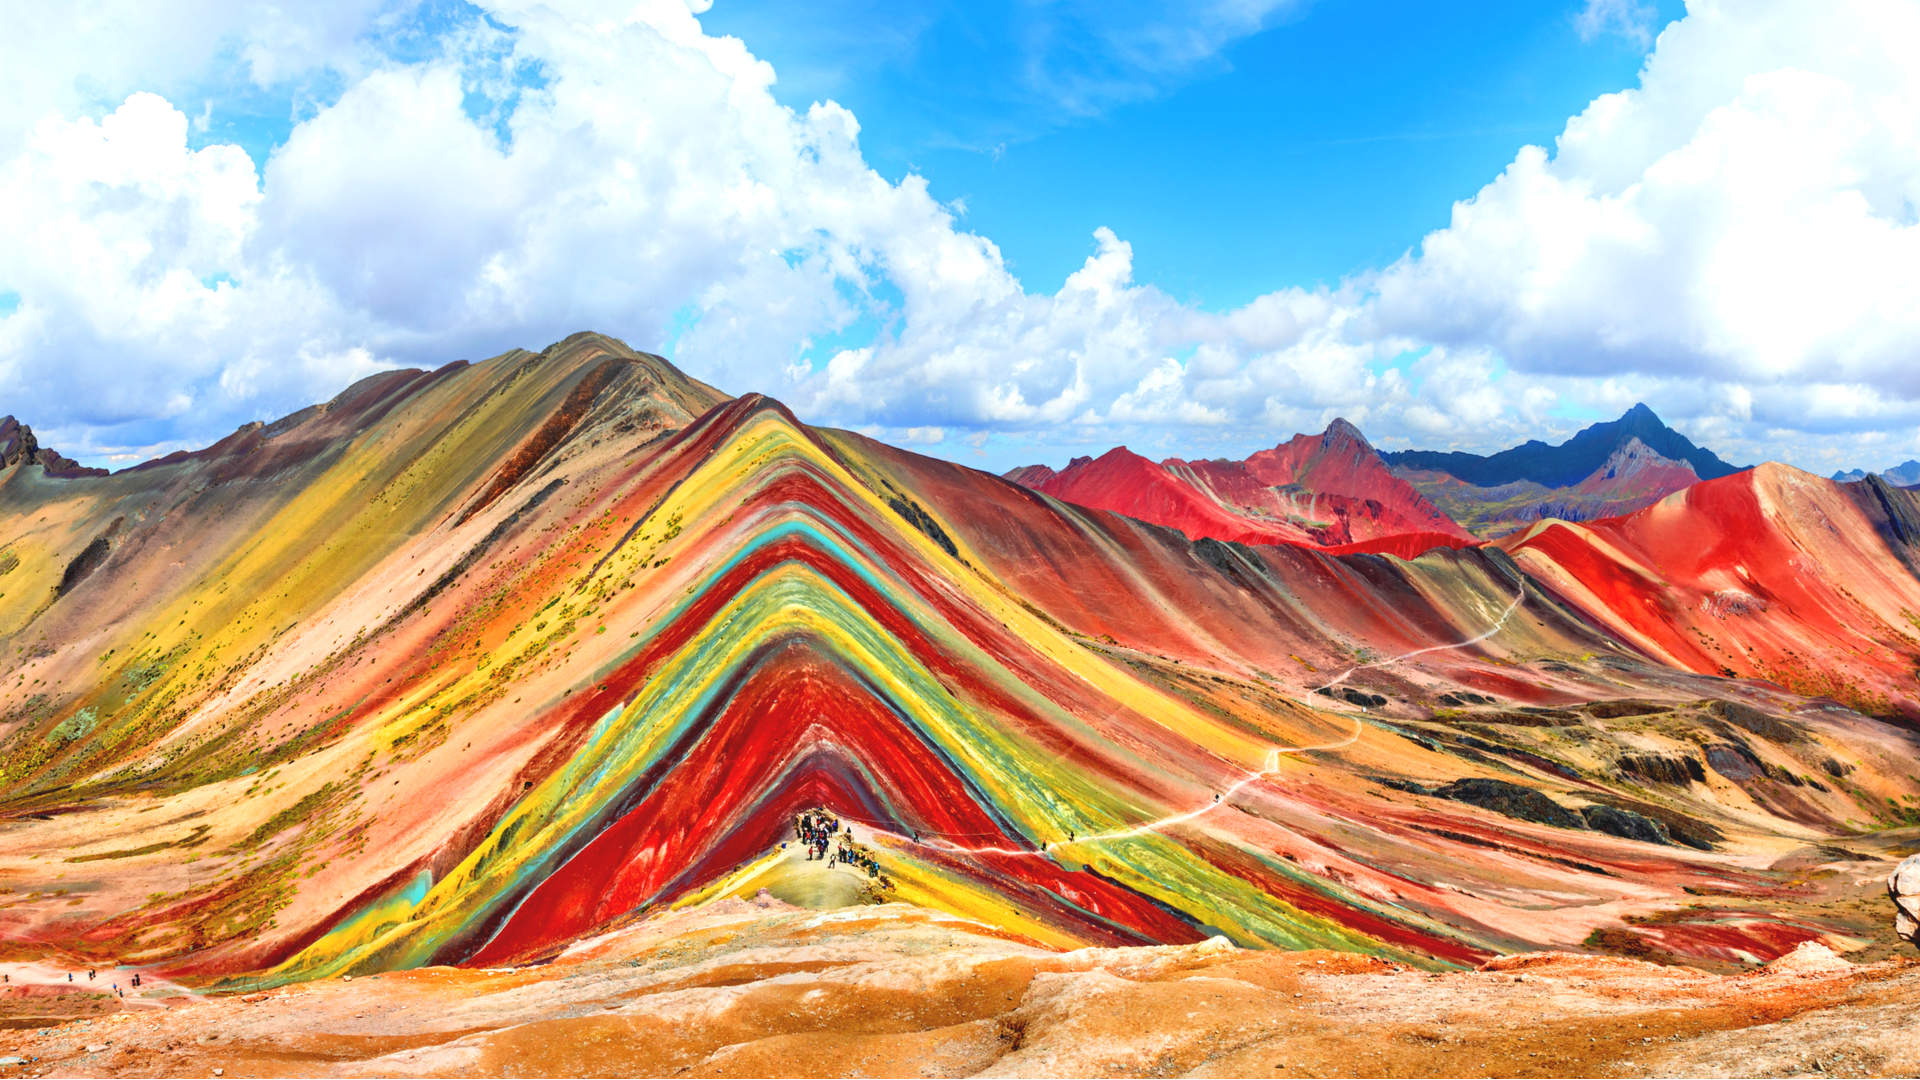 一度は見たい虹色の山々 美しい レインボー な絶景スポット5選